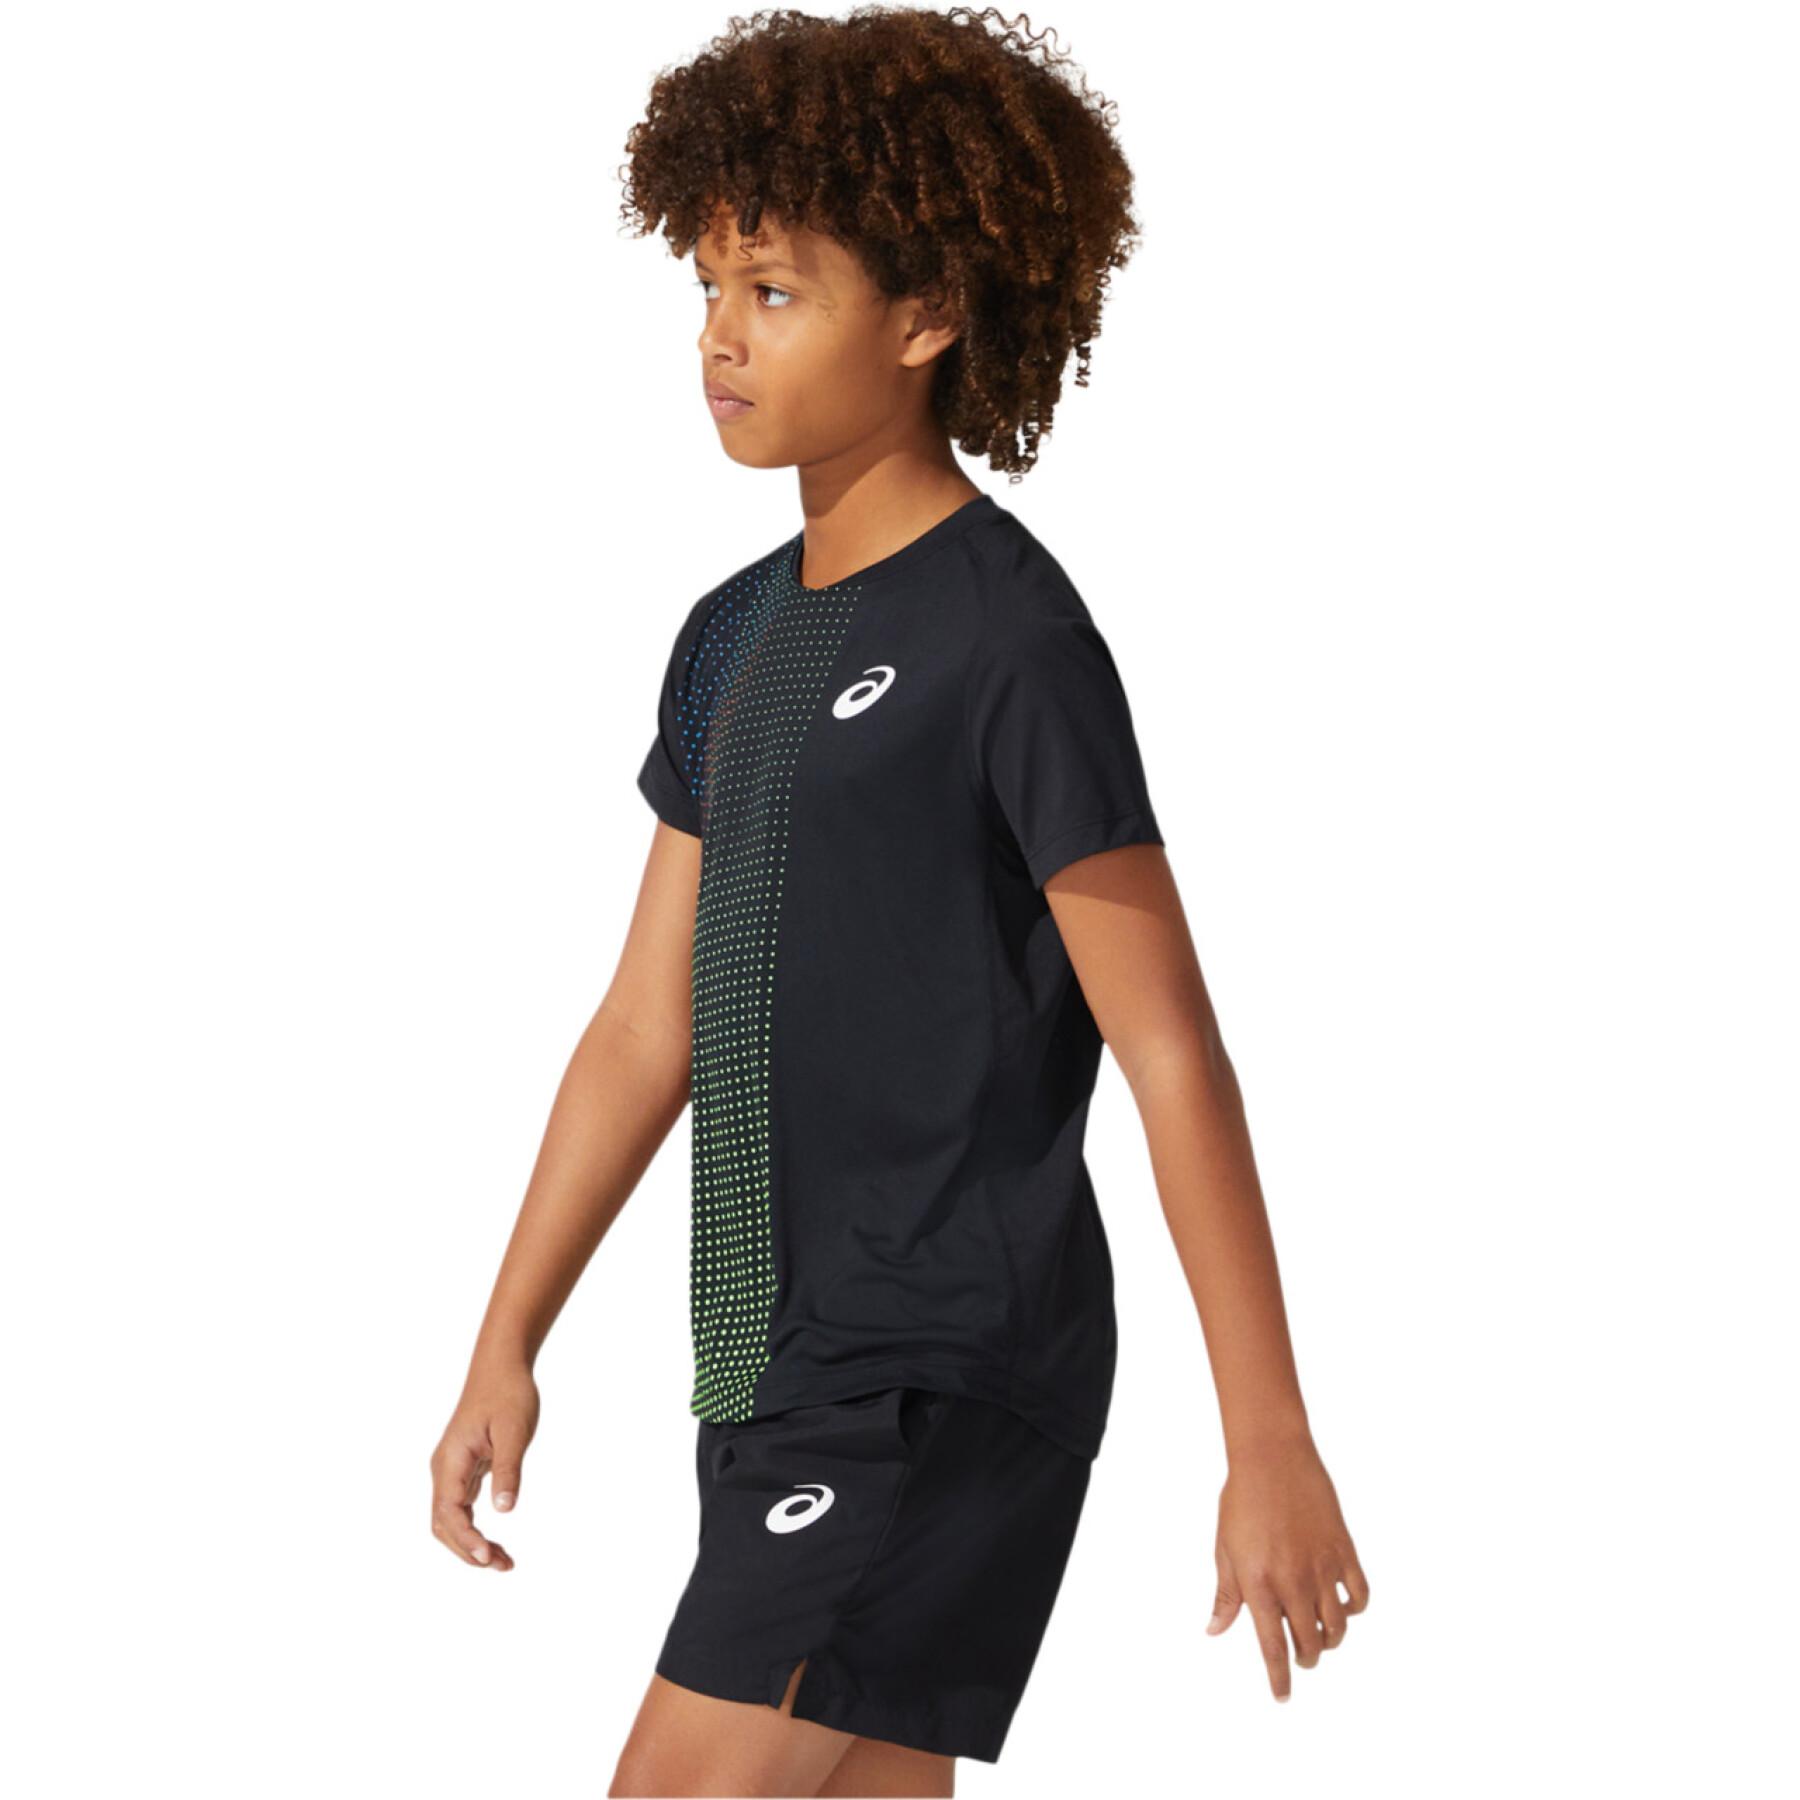 Sleeveless t-shirt for children Asics Boys Tennis Graphic